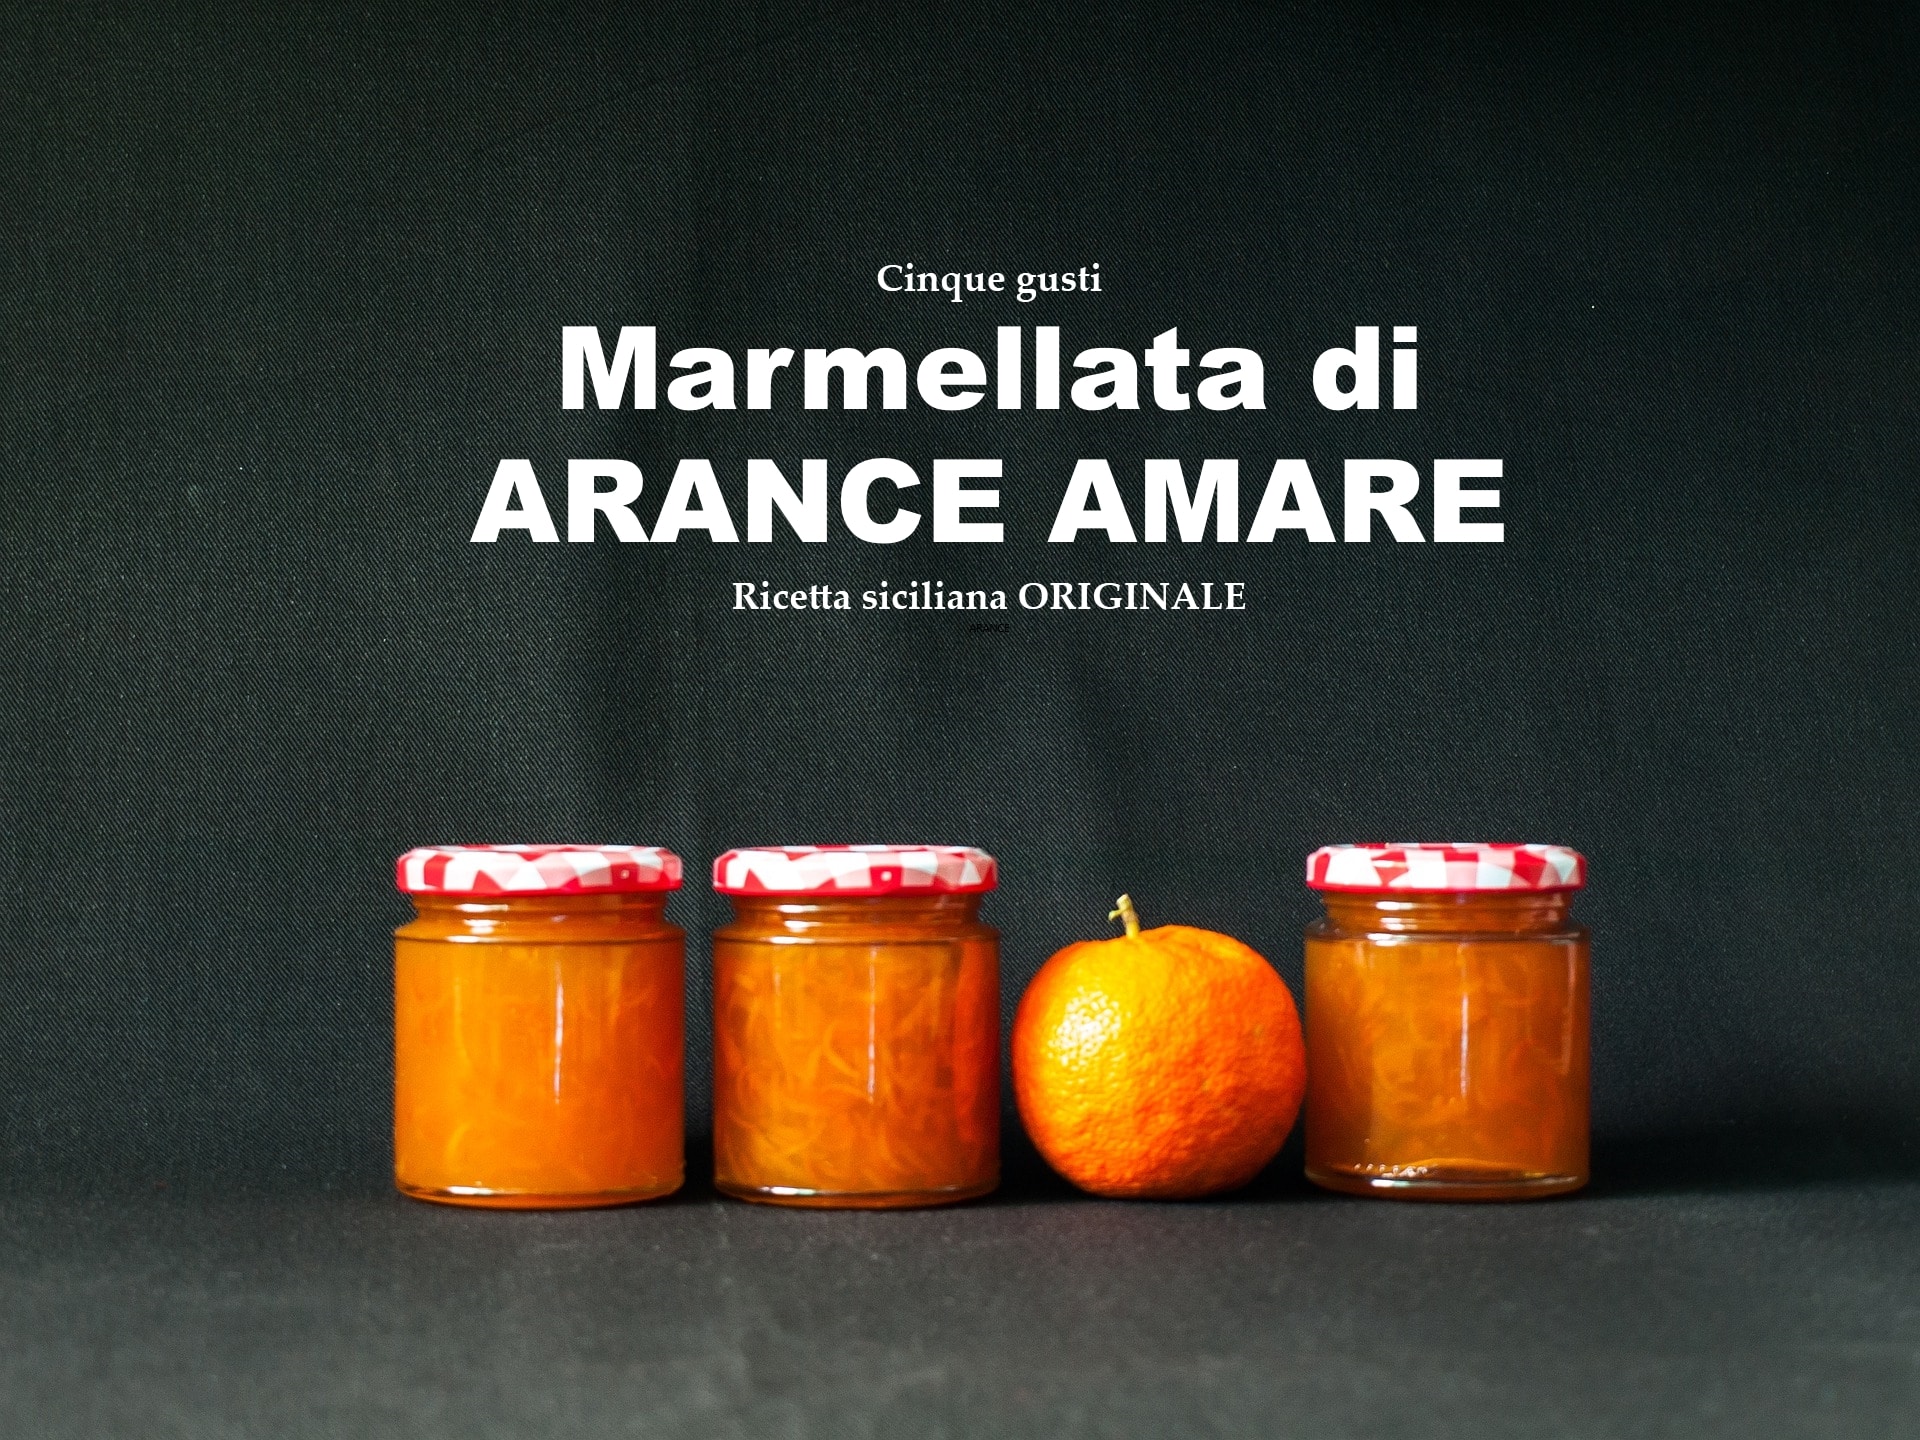 marmellata di arance amare ricetta siciliana originale cinque gusti